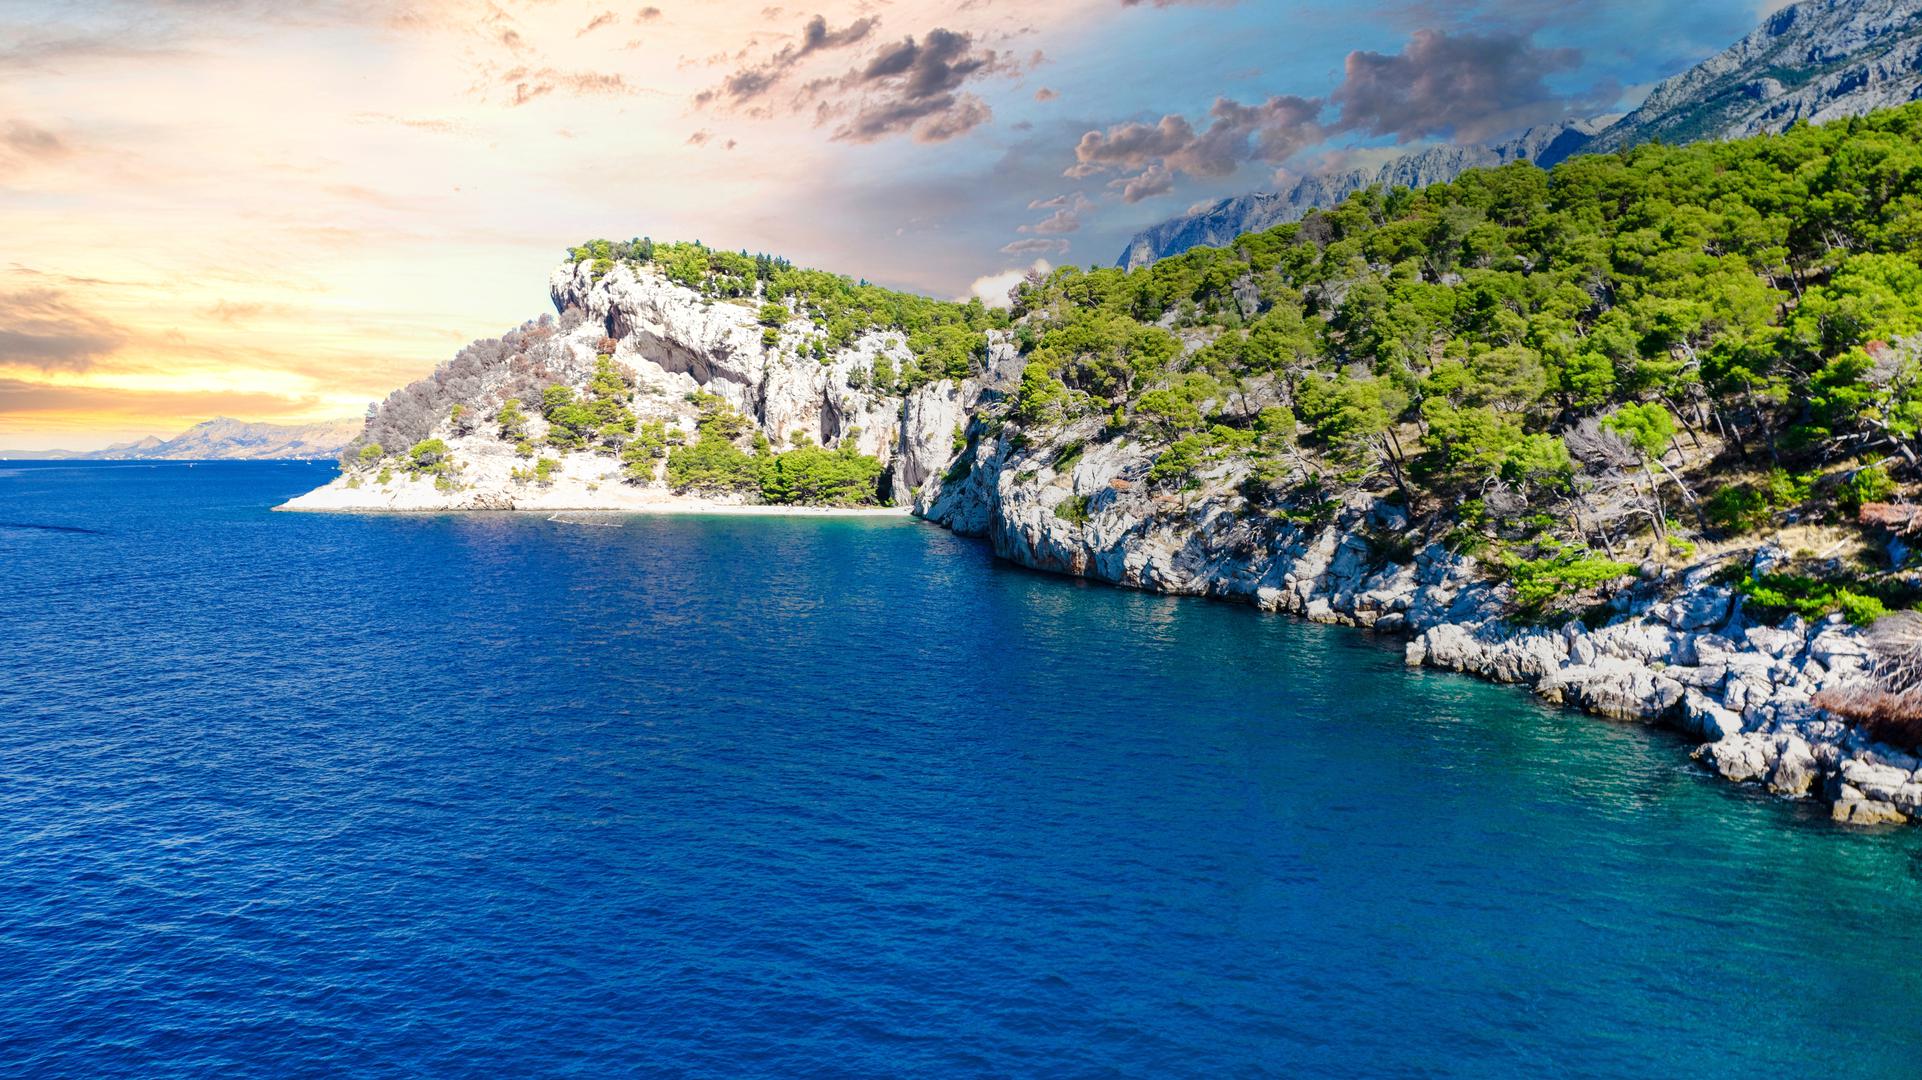 Plaža Nugal, Hrvatska: Okružena strmim liticama i sjenama borova, do ove udaljene plaže na kopnu nasuprot otoka Brača dolazi se uskom stazom koja se čini kao stvorena za koze, a ne za ljude koji traže bijeg bez odjeće na Jadranu. Obavezno ponesite debeli ručnik ili čak ležaljku za plažu - kao i mnoge hrvatske plaže, površina je šljunčana, a ne pješčana. Nugal je od najbližeg grada udaljen oko pola sata hoda, a do njega se može doći i brodom ili kajakom iz Makarske ili Tučepa.